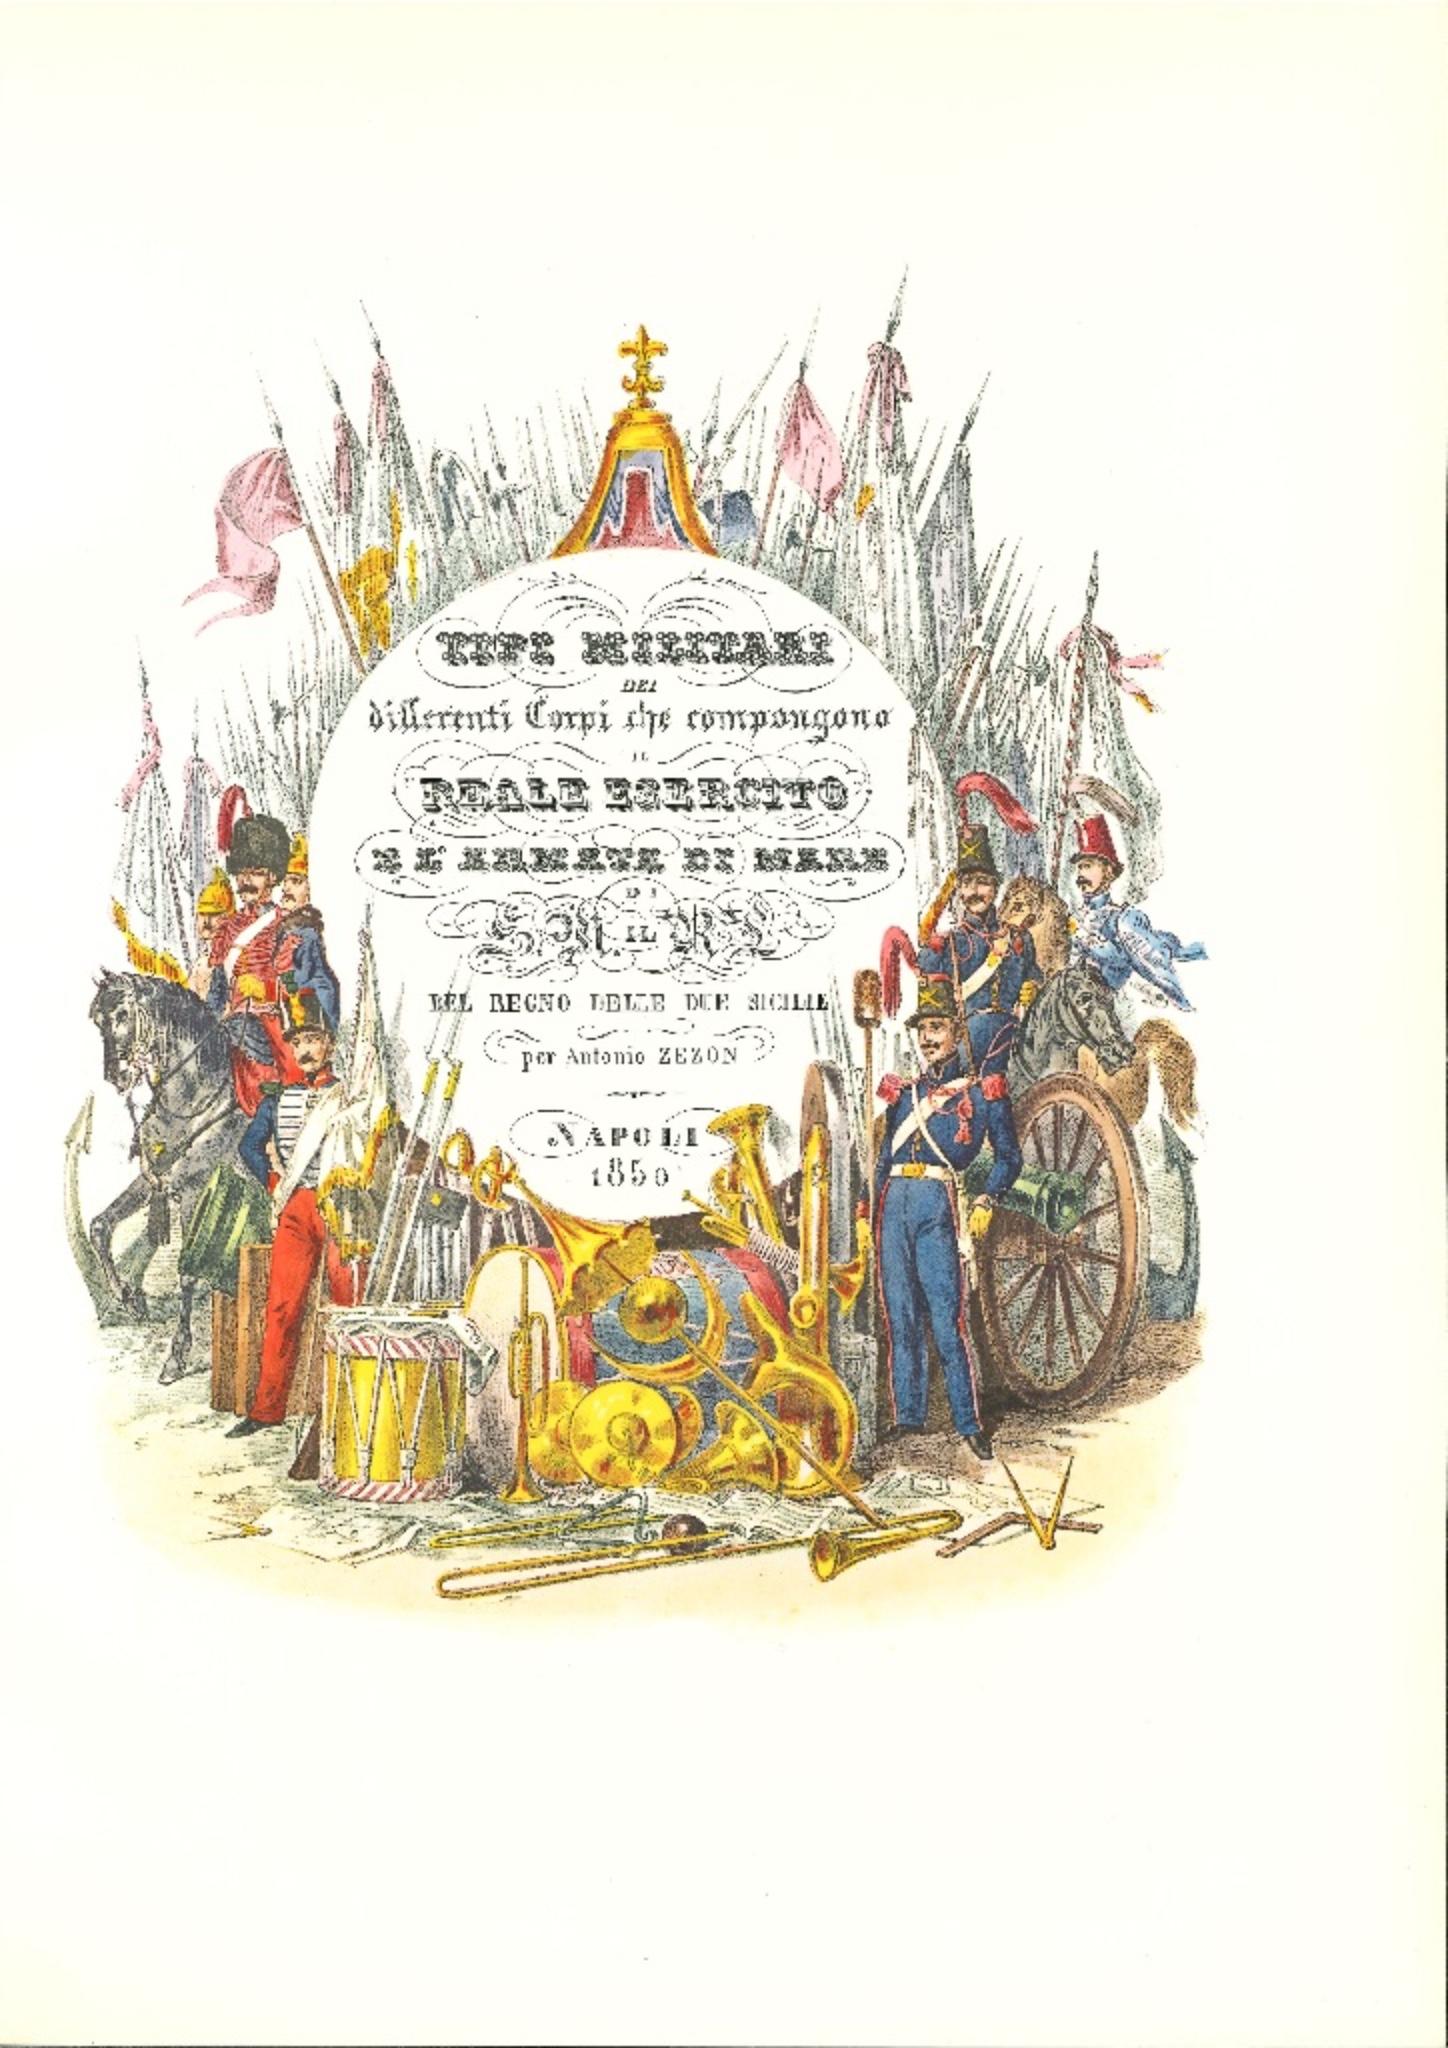 Das Frontispiz von "Die königliche Armee" ist eine Original-Lithographie von Antonio Zezon. Neapel, 1850.

Interessante farbige Lithographie, die die königliche Armee beschreibt, daneben eine zentrale Inschrift in der Art eines Slogans "TIPI